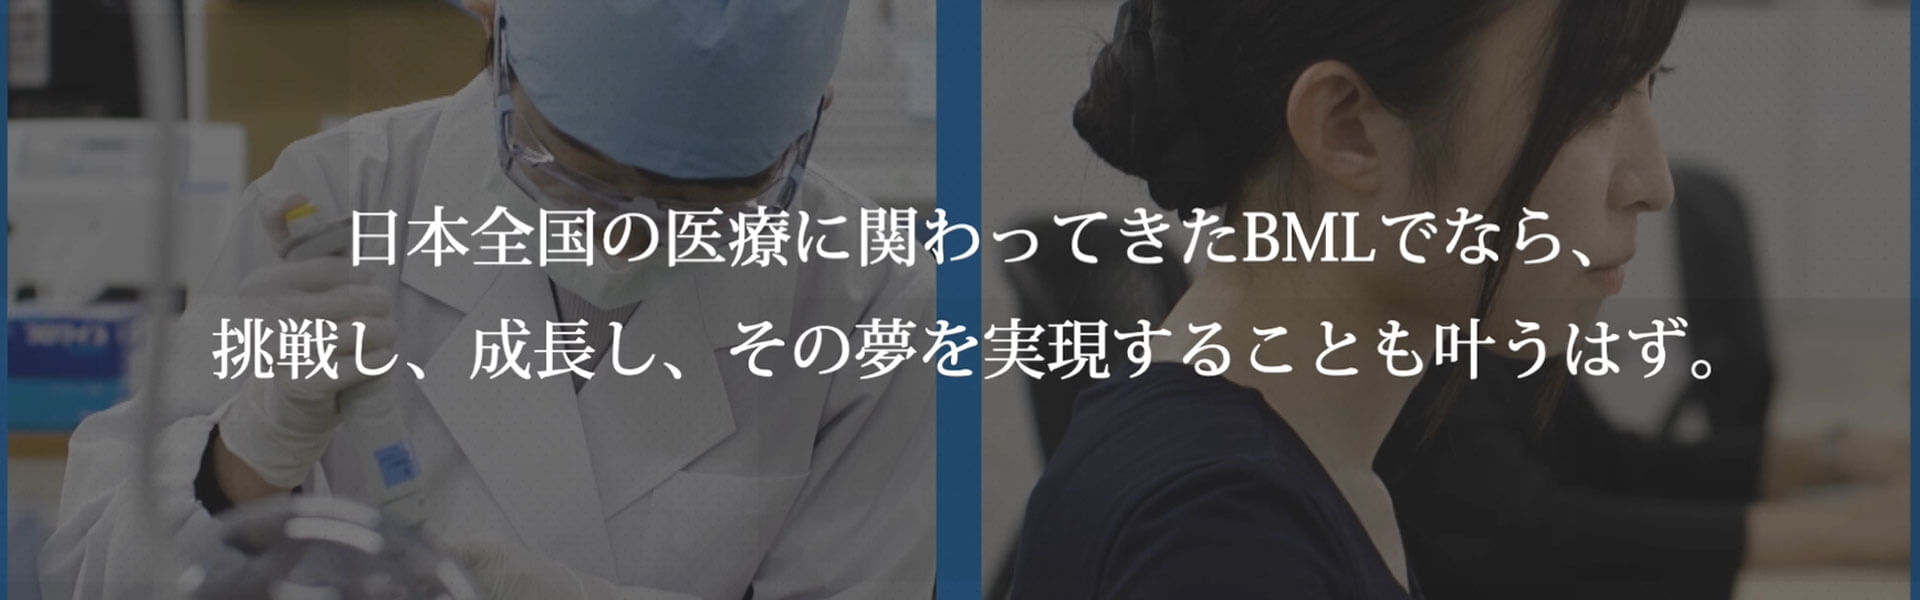 日本全国の医療に関わってきたBMLでなら、挑戦し、成長し、その夢を実現することも叶うはず。